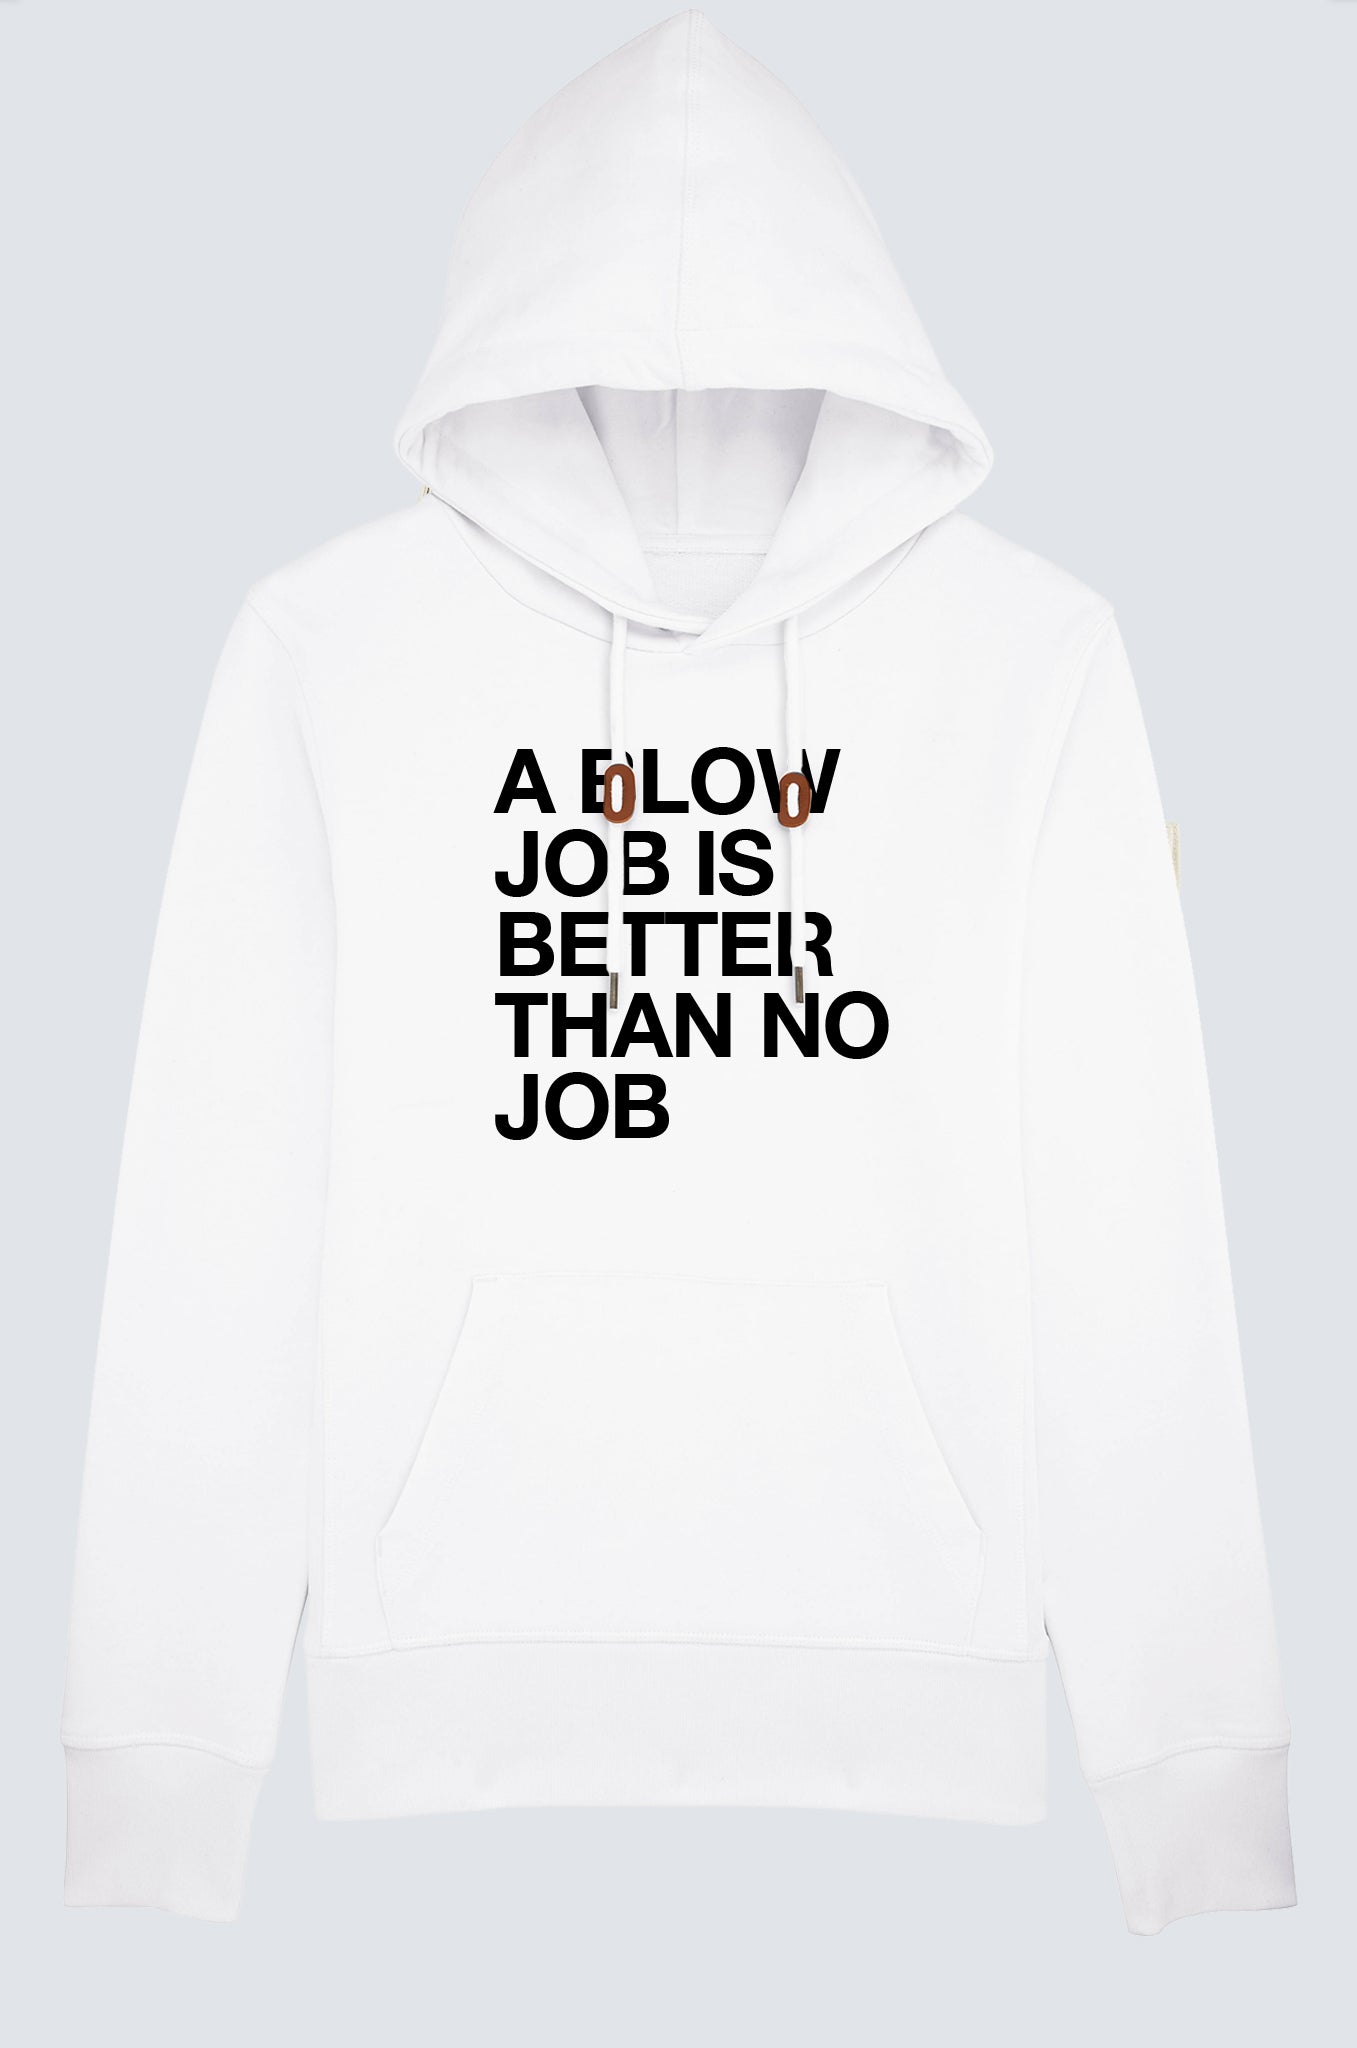 A blow job is better than no job